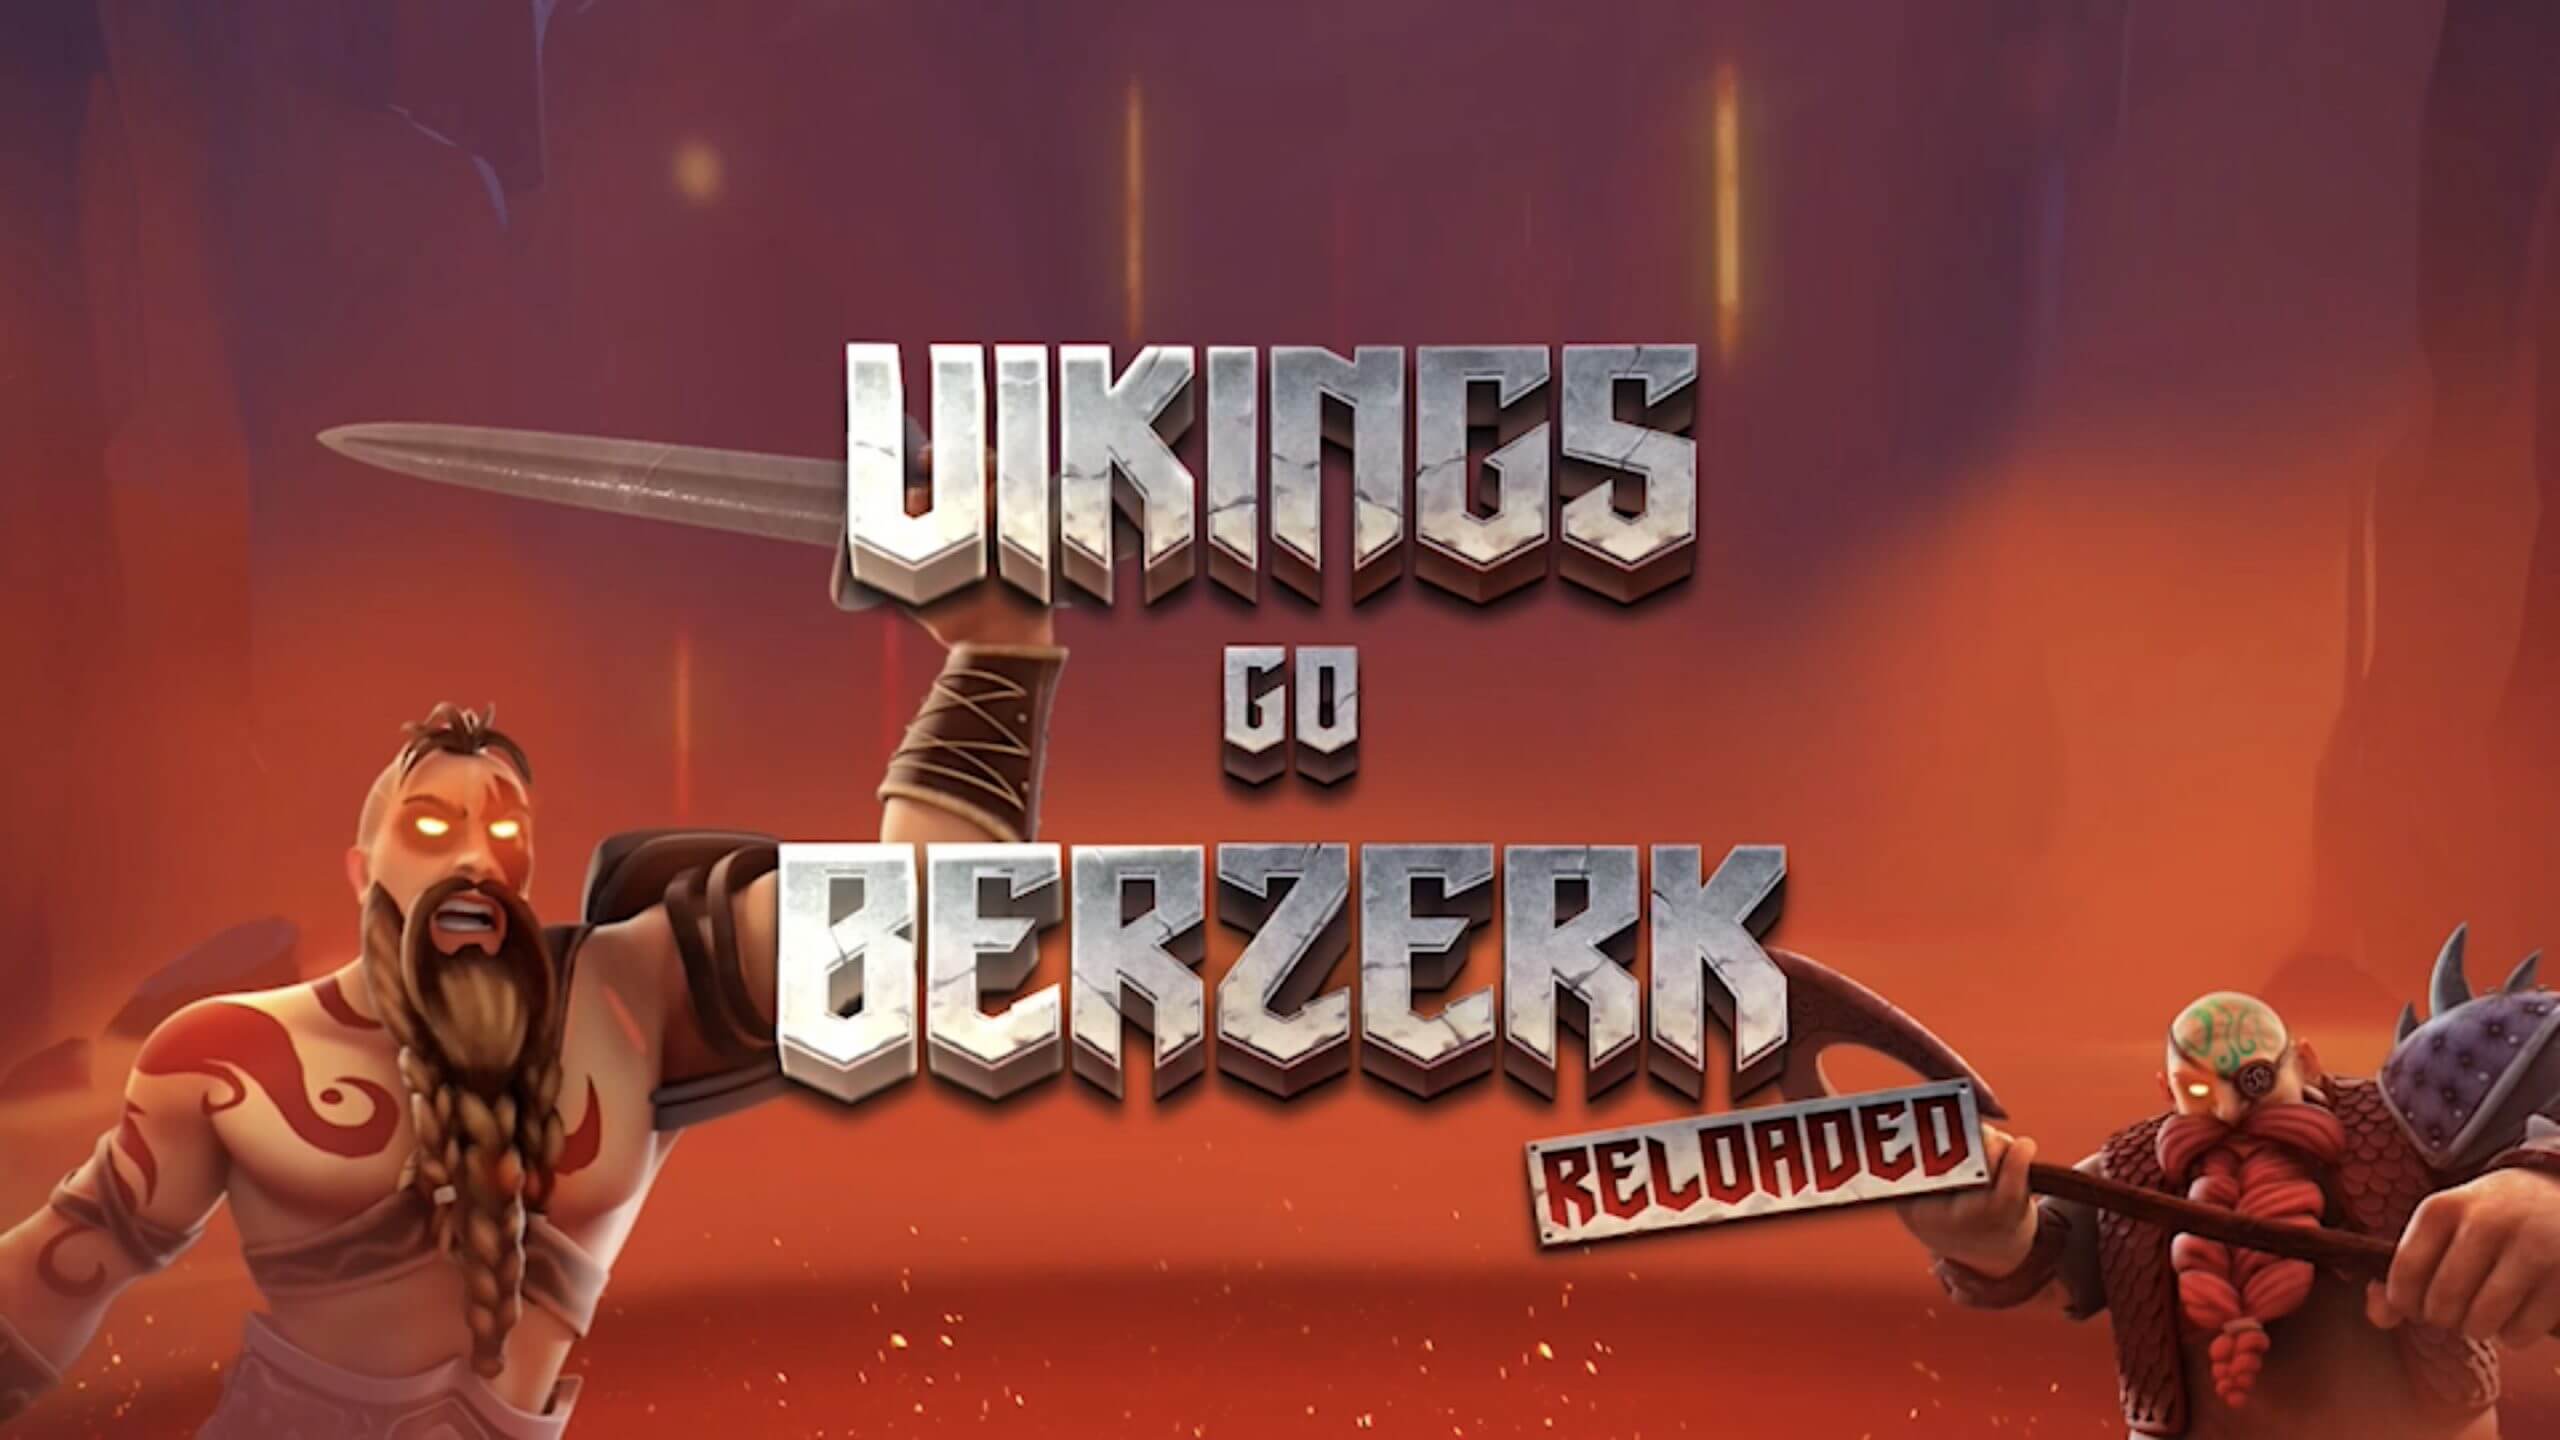 Vikings go berzerk reloaded